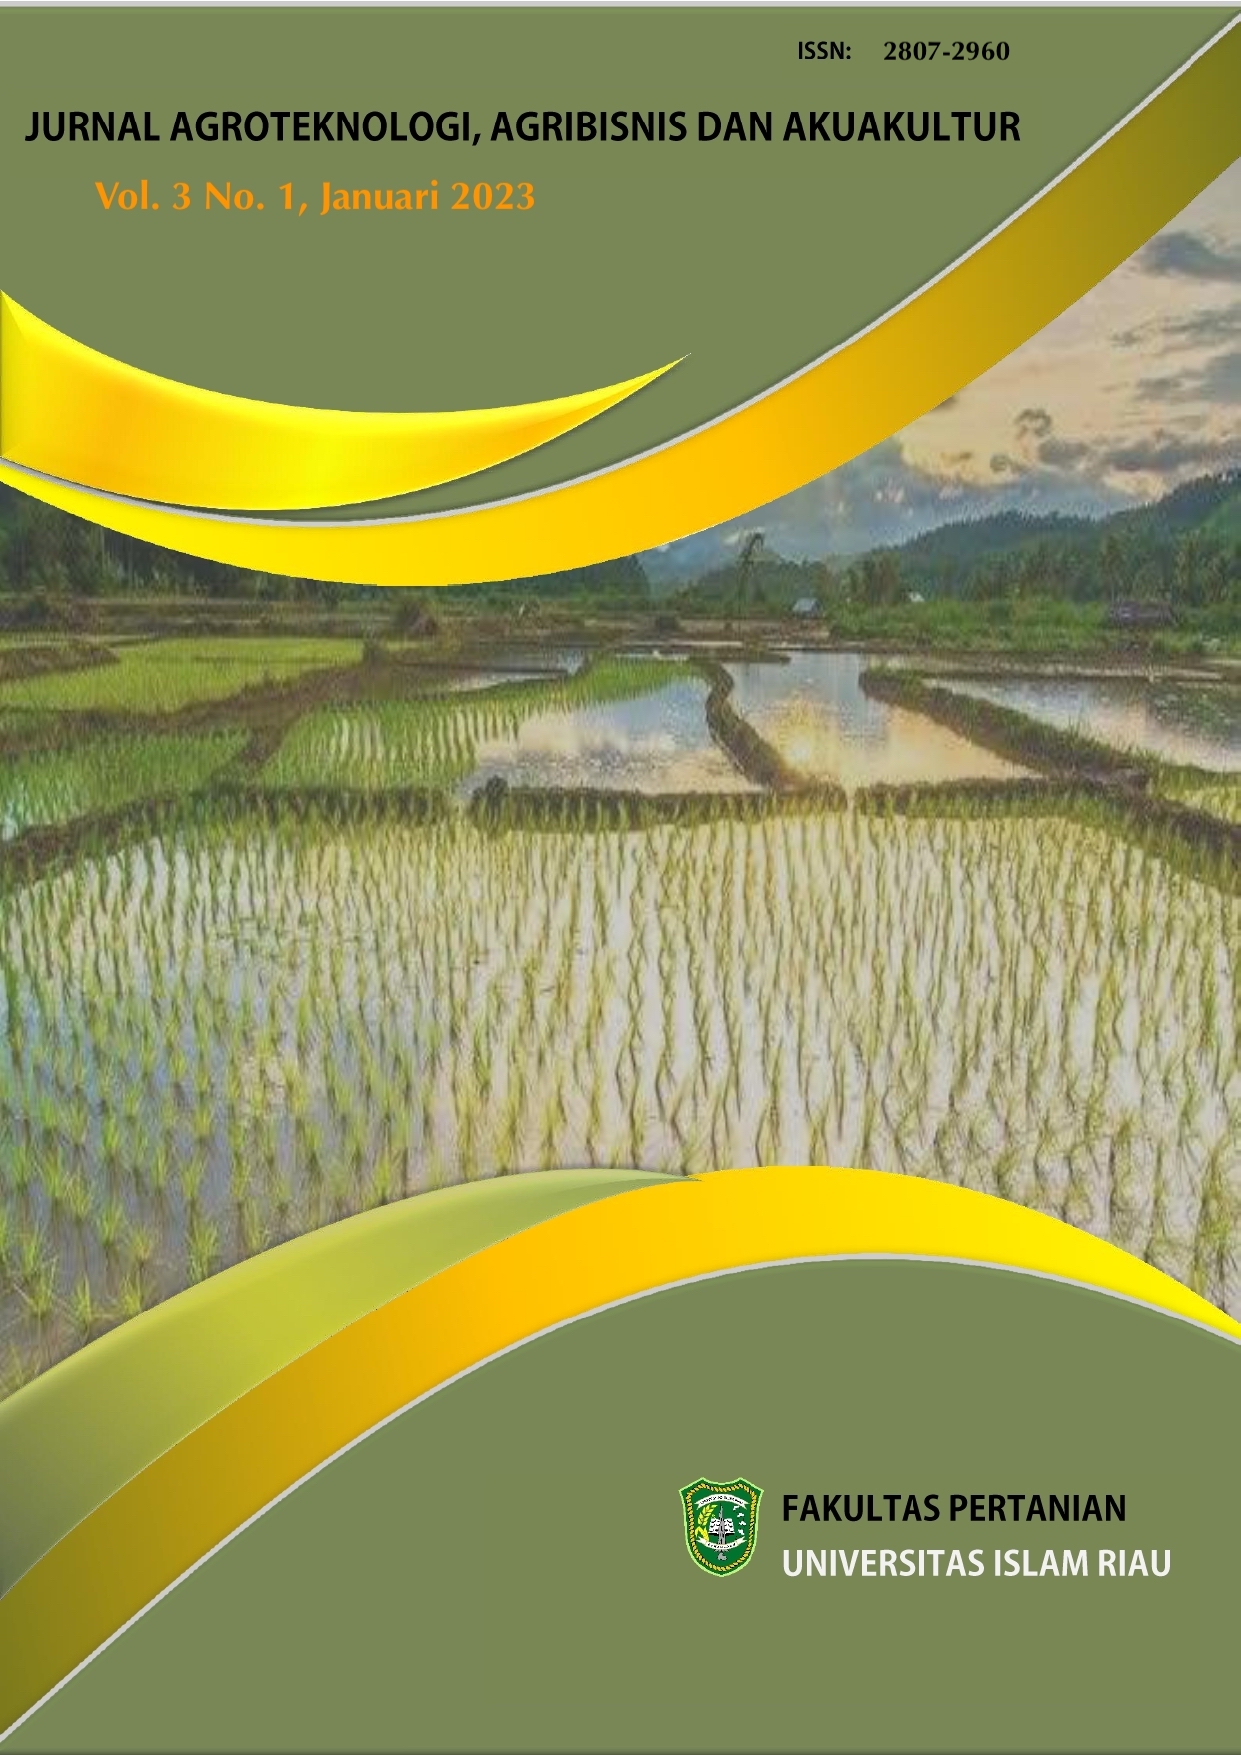 					View Vol. 3 No. 1 (2023): Jurnal Agroteknologi Agribisnis dan Akuakultur Edisi Januari 2023
				